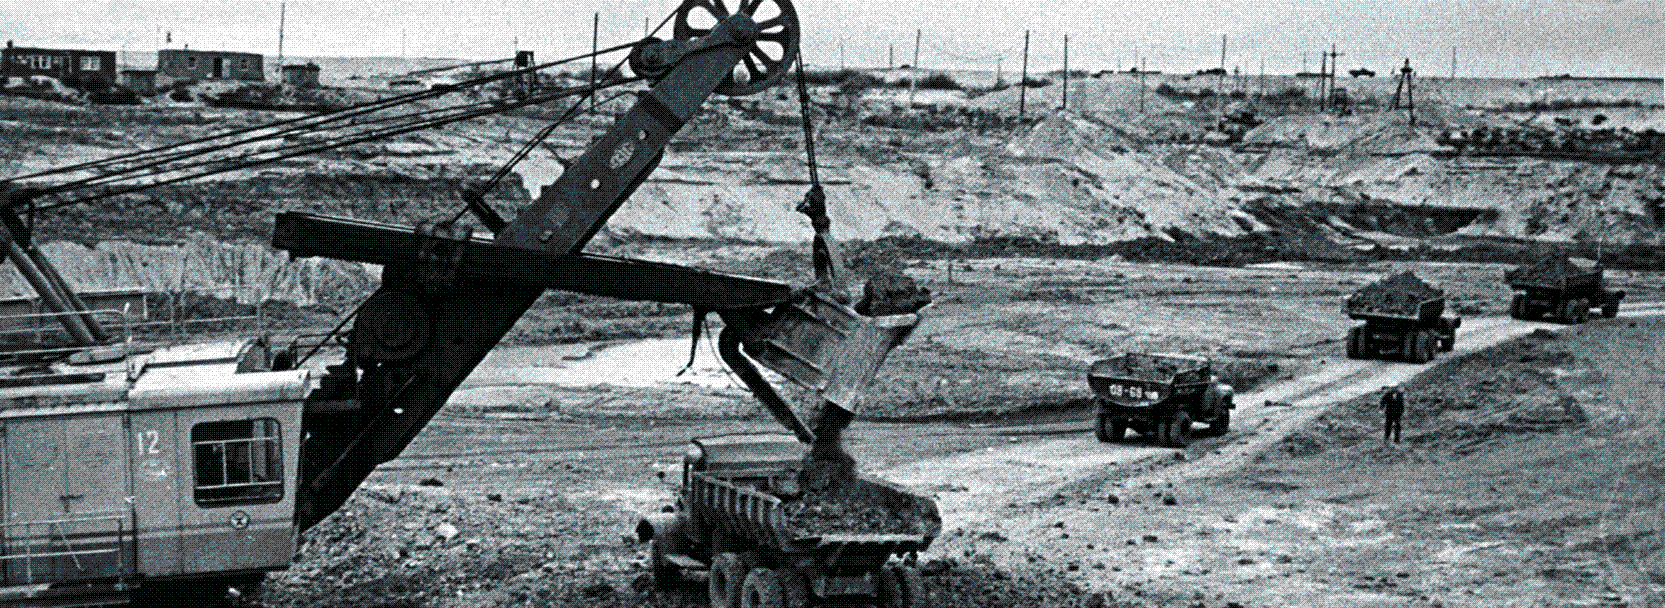 "Строительство Чебоксарской ГЭС. Начало 1970-х гг."